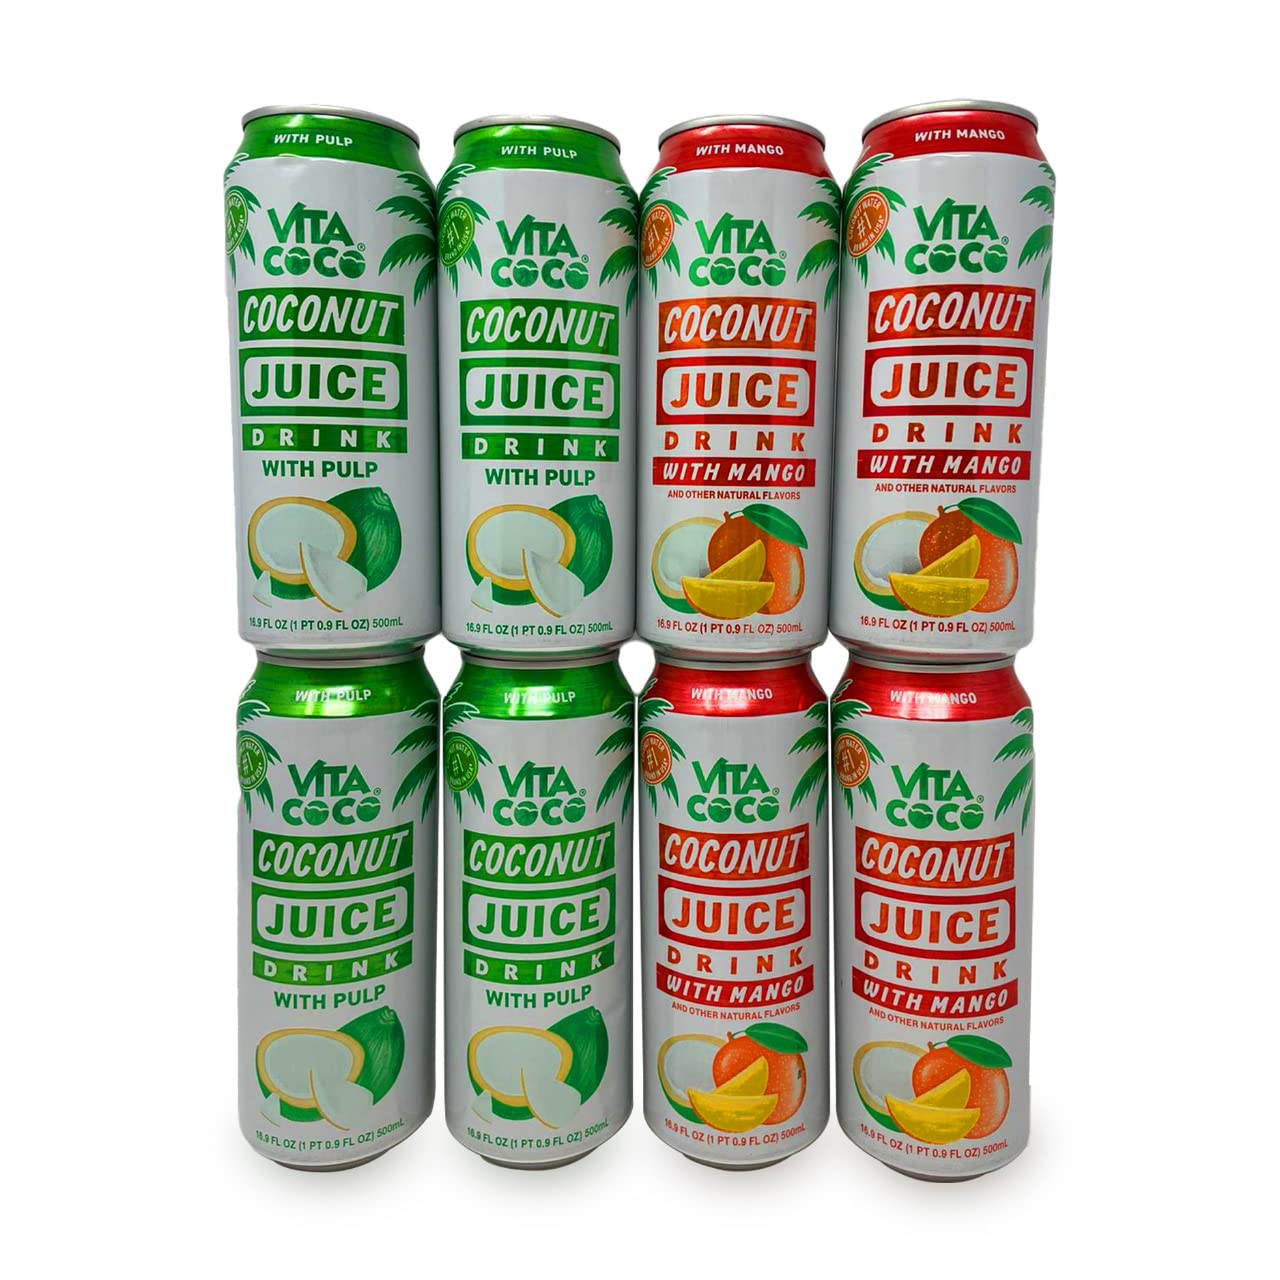 Vita Coco Coconut Juice with Mango & Vita Coco Coconut Juice with Pulp Cans, 16.9oz